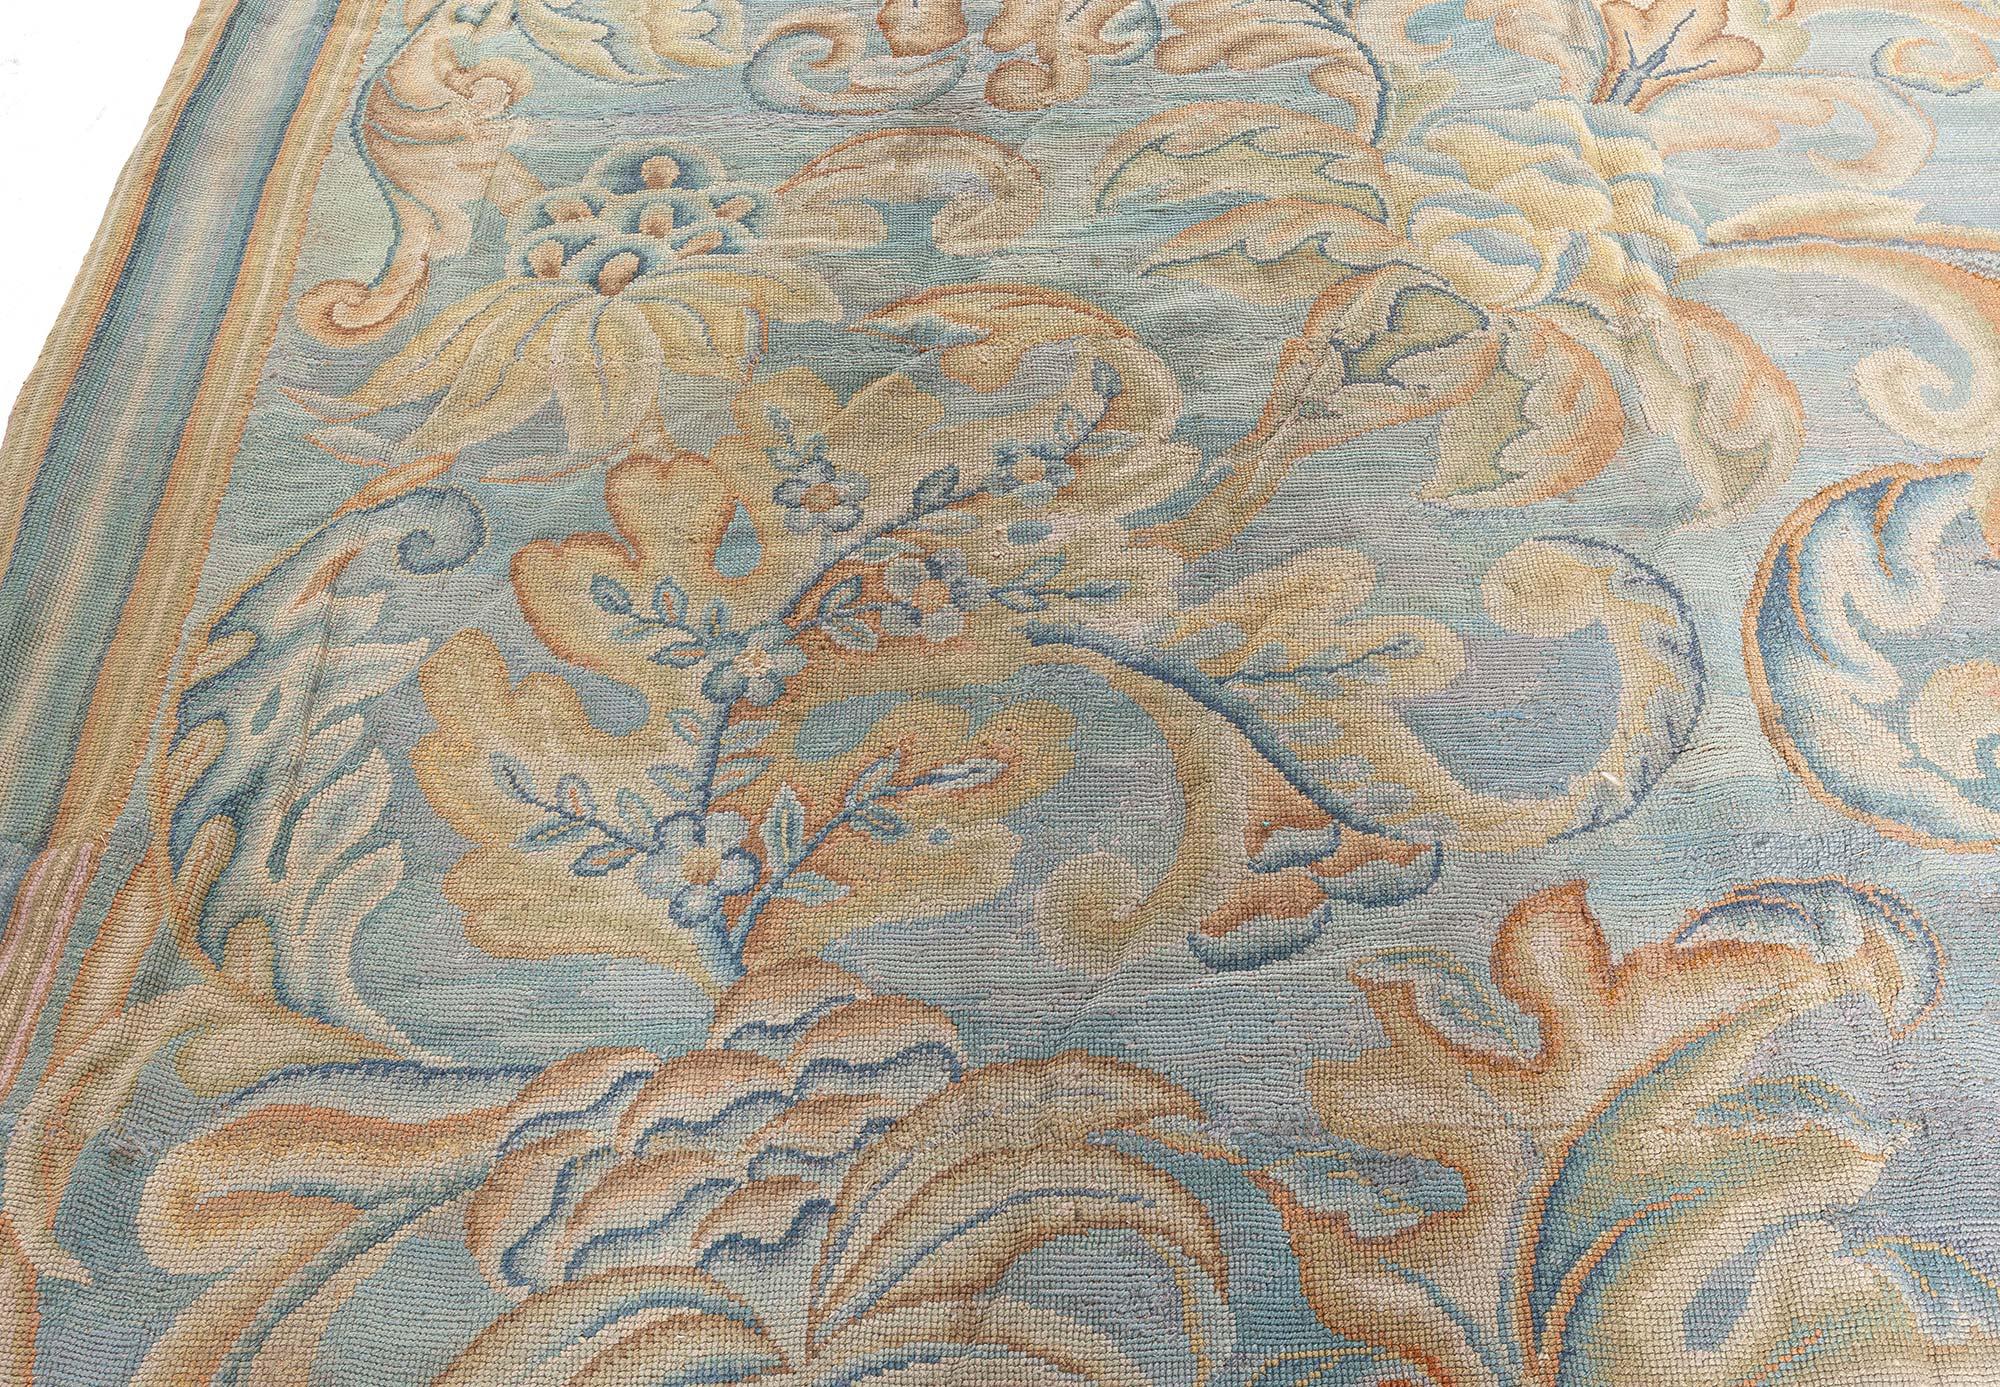 Antique English Needlework Beige Botanic Handmade Carpet
Size: 13'8